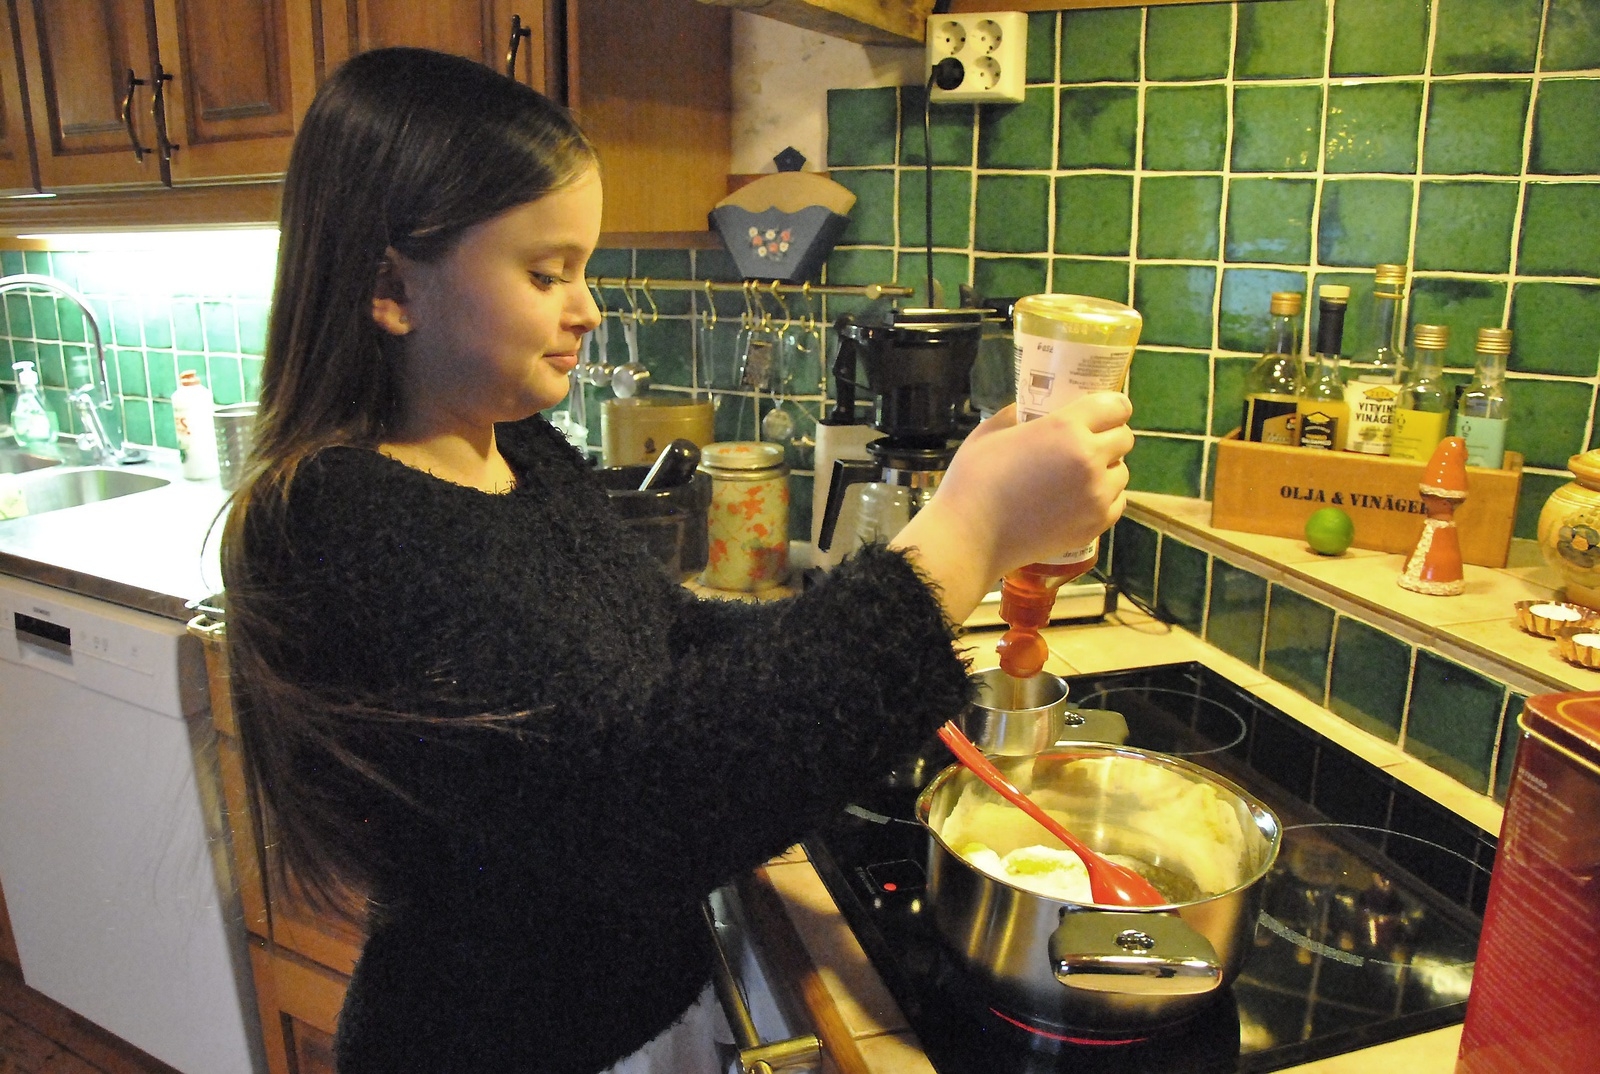 Emmy Tennevi, 11 år, har utnämnt sig själv till boss i köket och hon verkar ha koll på läget. Här häller hon ner sirap i kastrullen för att göra kola. 
Foto: Marie Strömberg Andersson